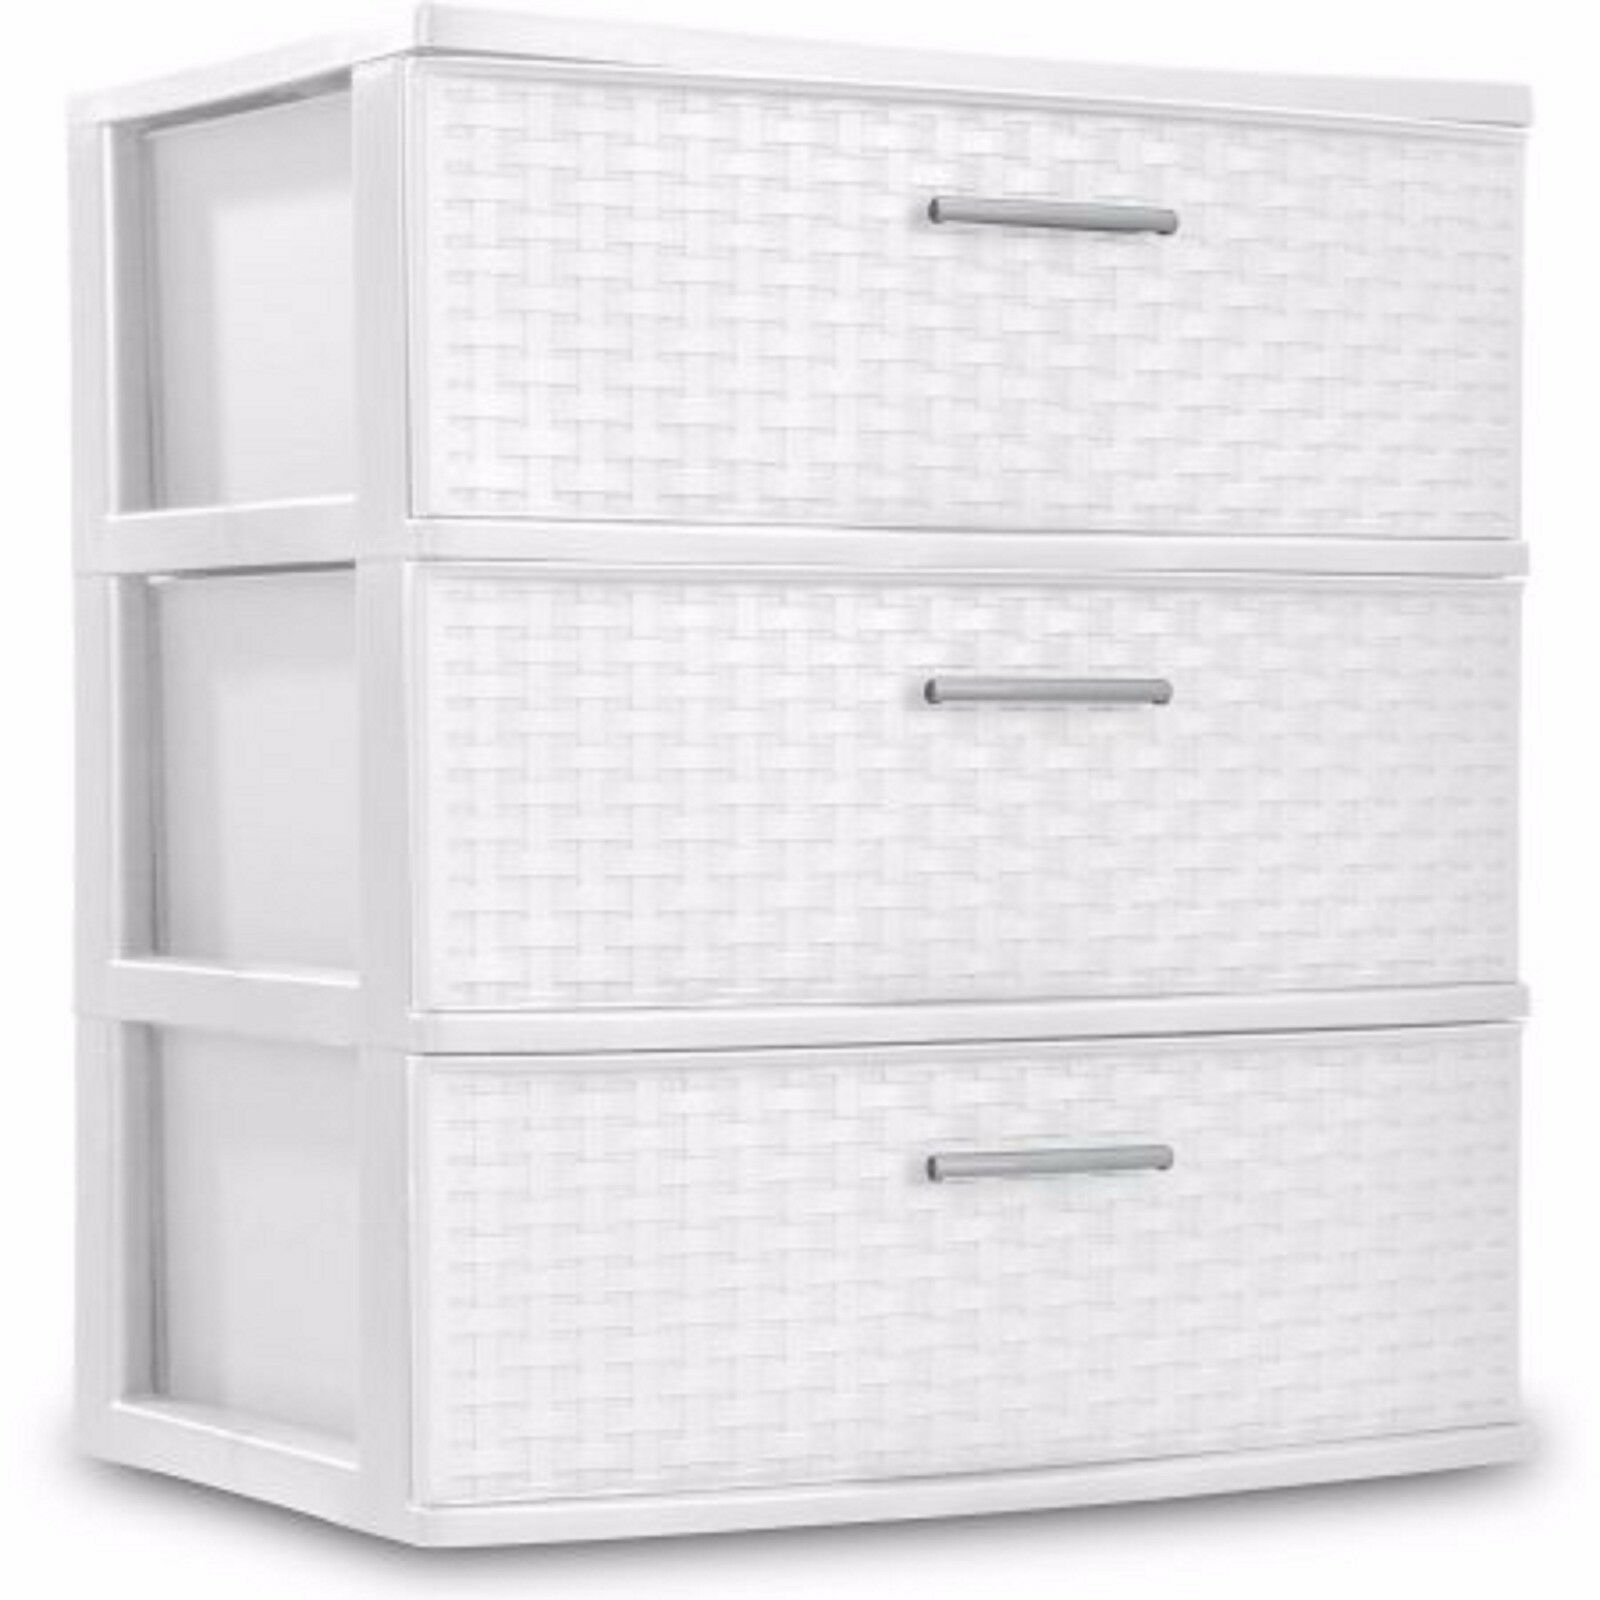 Sterilite Dresser Storage Plastic Clothes Organizer Cabinet 3 Drawer with regard to measurements 1600 X 1600